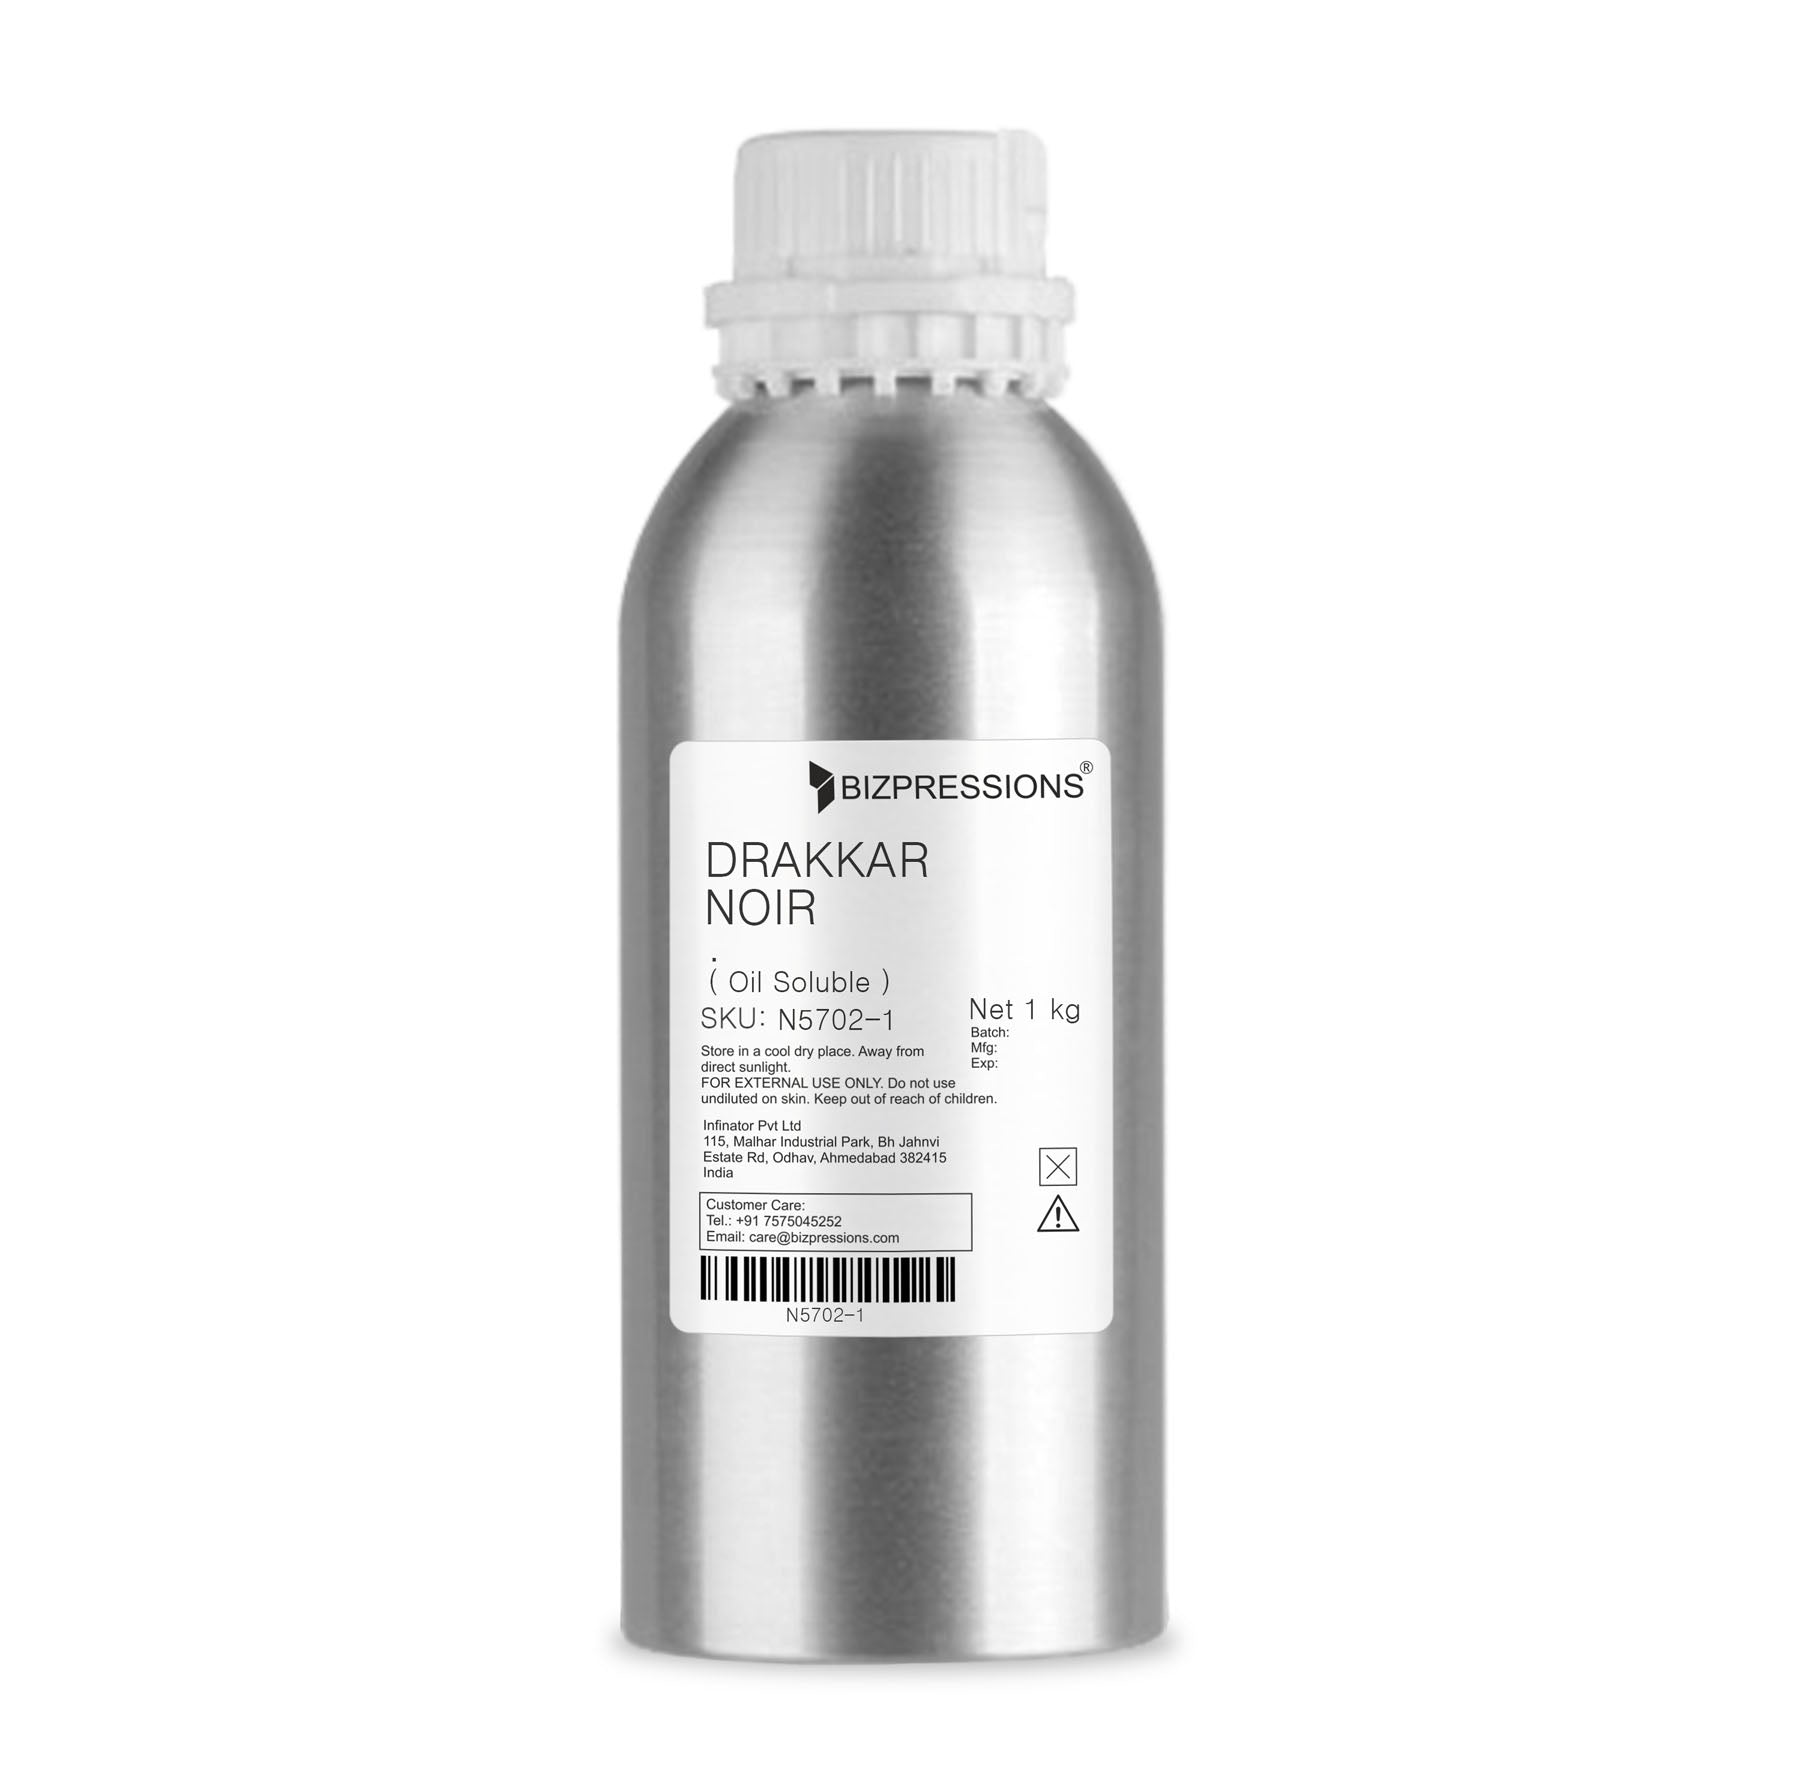 DRAKKAR NOIR - Fragrance ( Oil Soluble ) - 1 kg